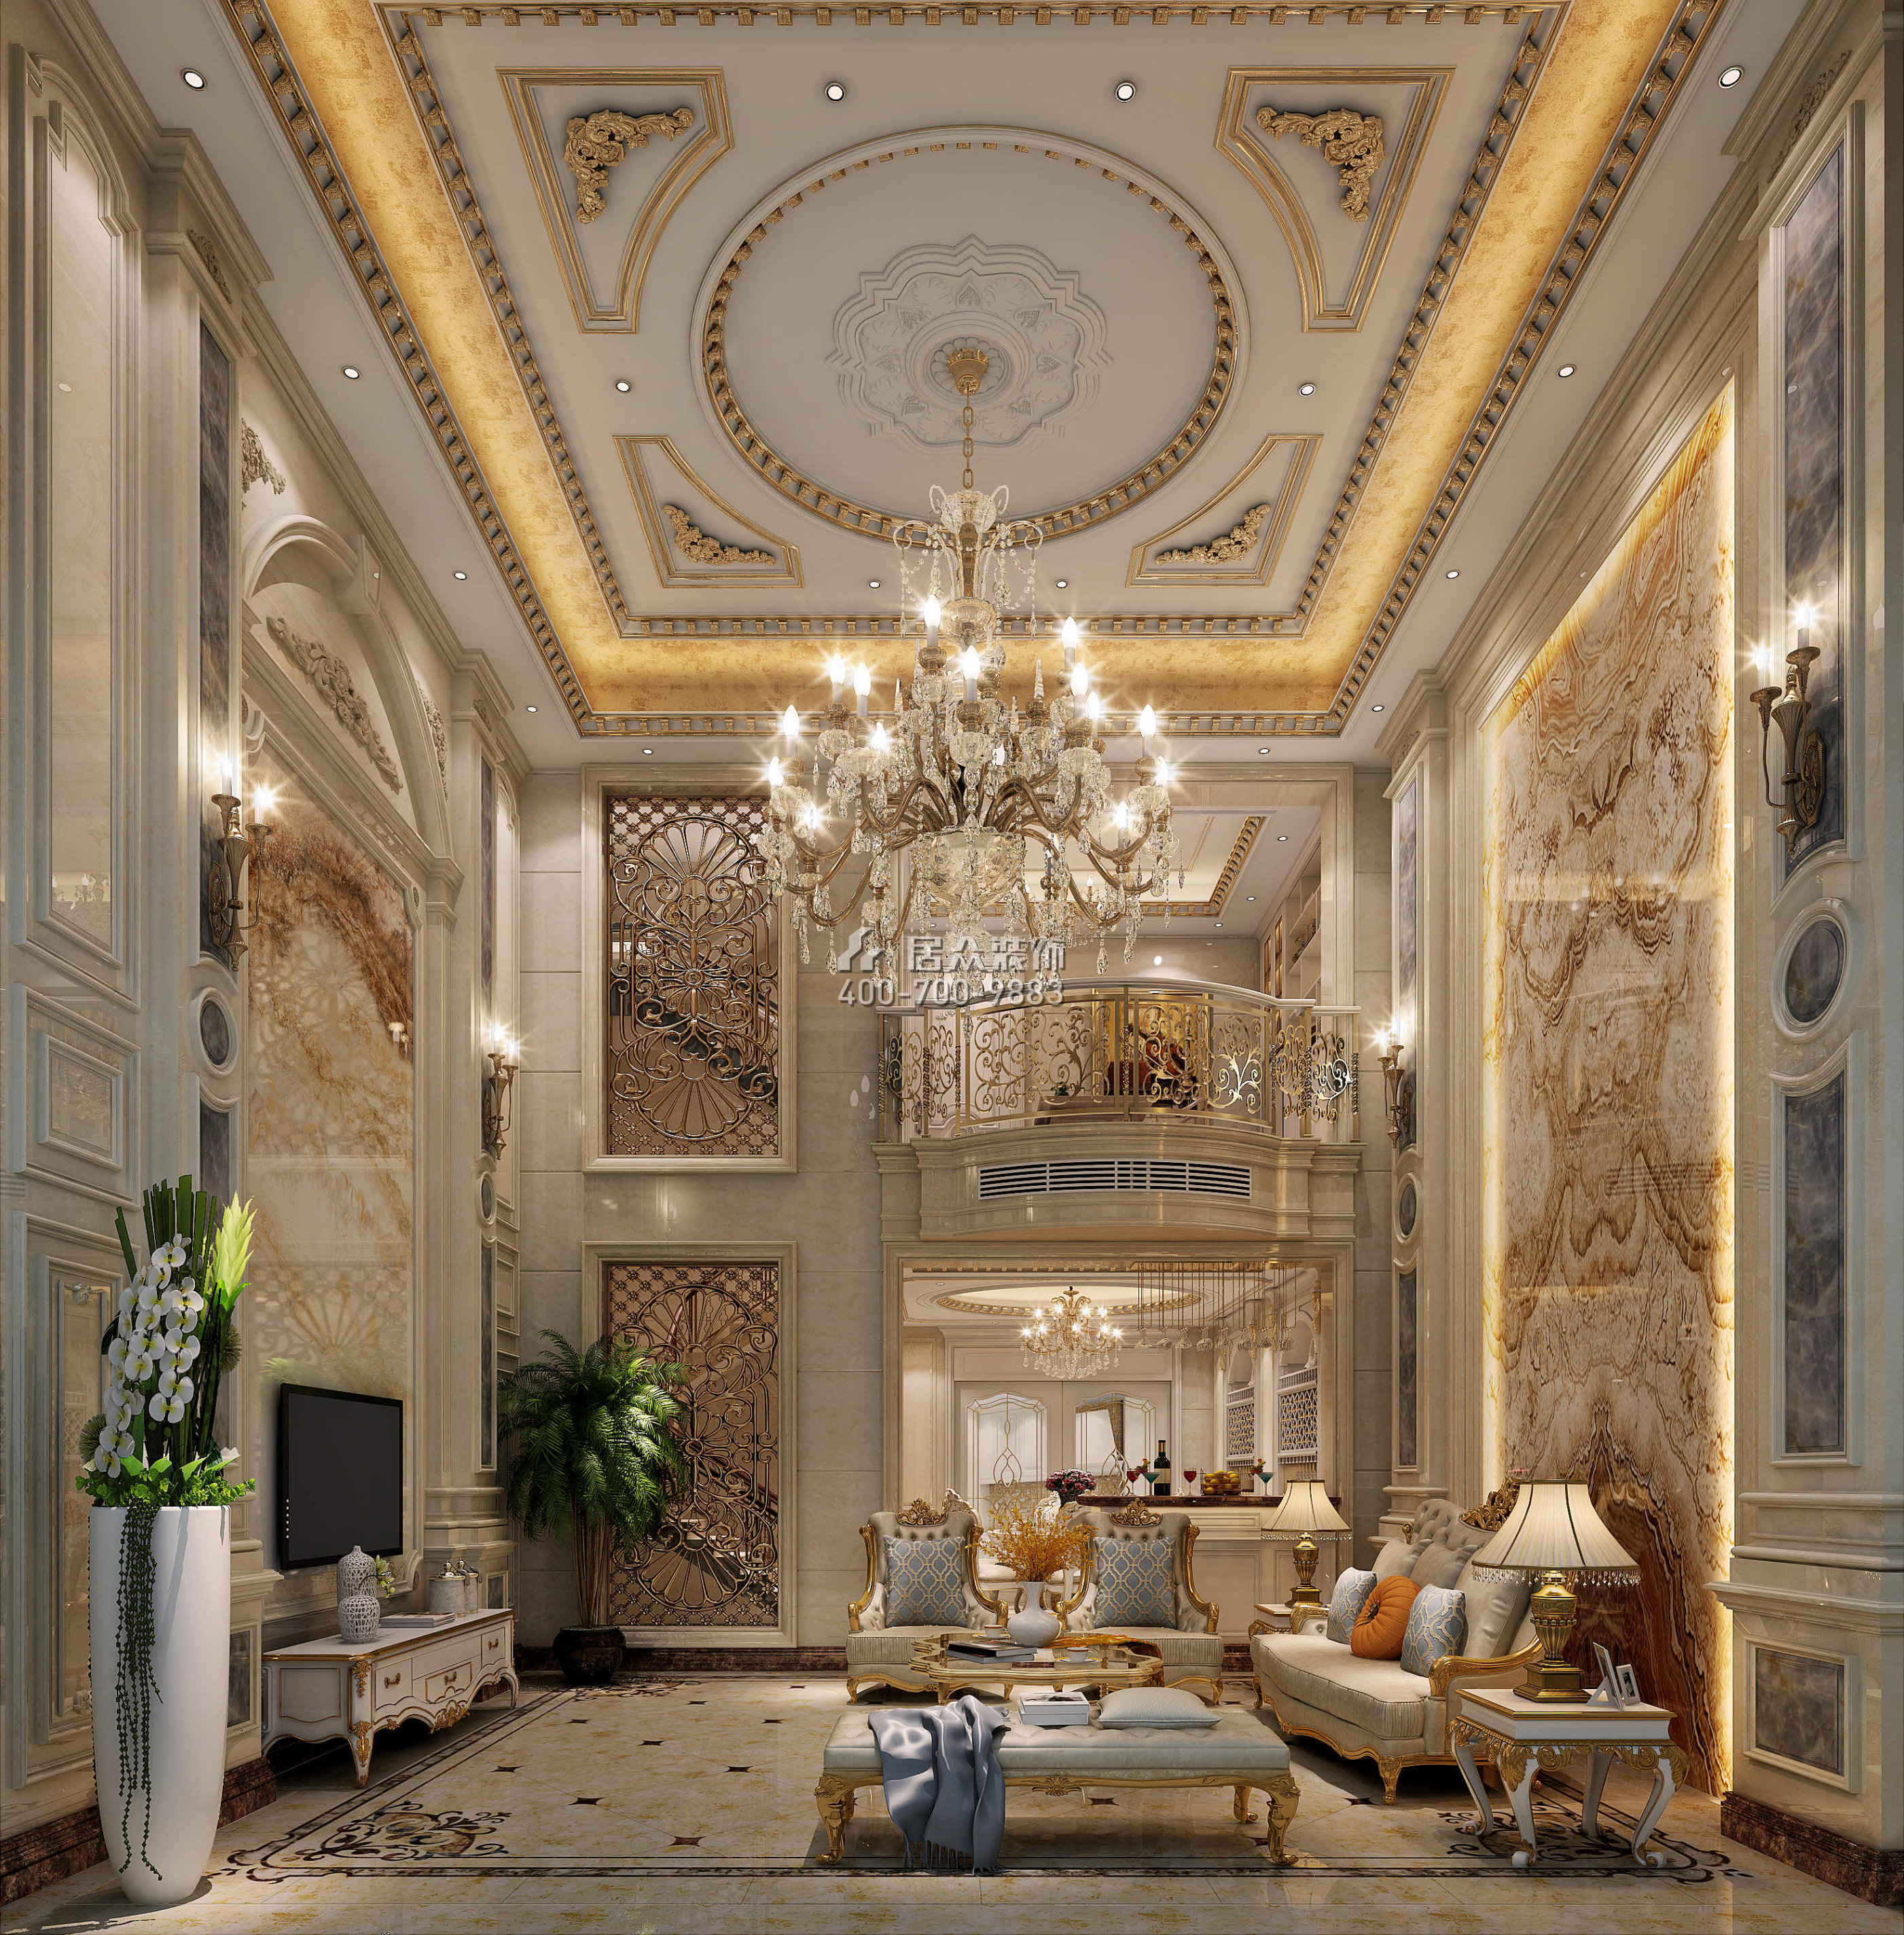 錦繡豪庭380平方米歐式風格別墅戶型客廳裝修效果圖